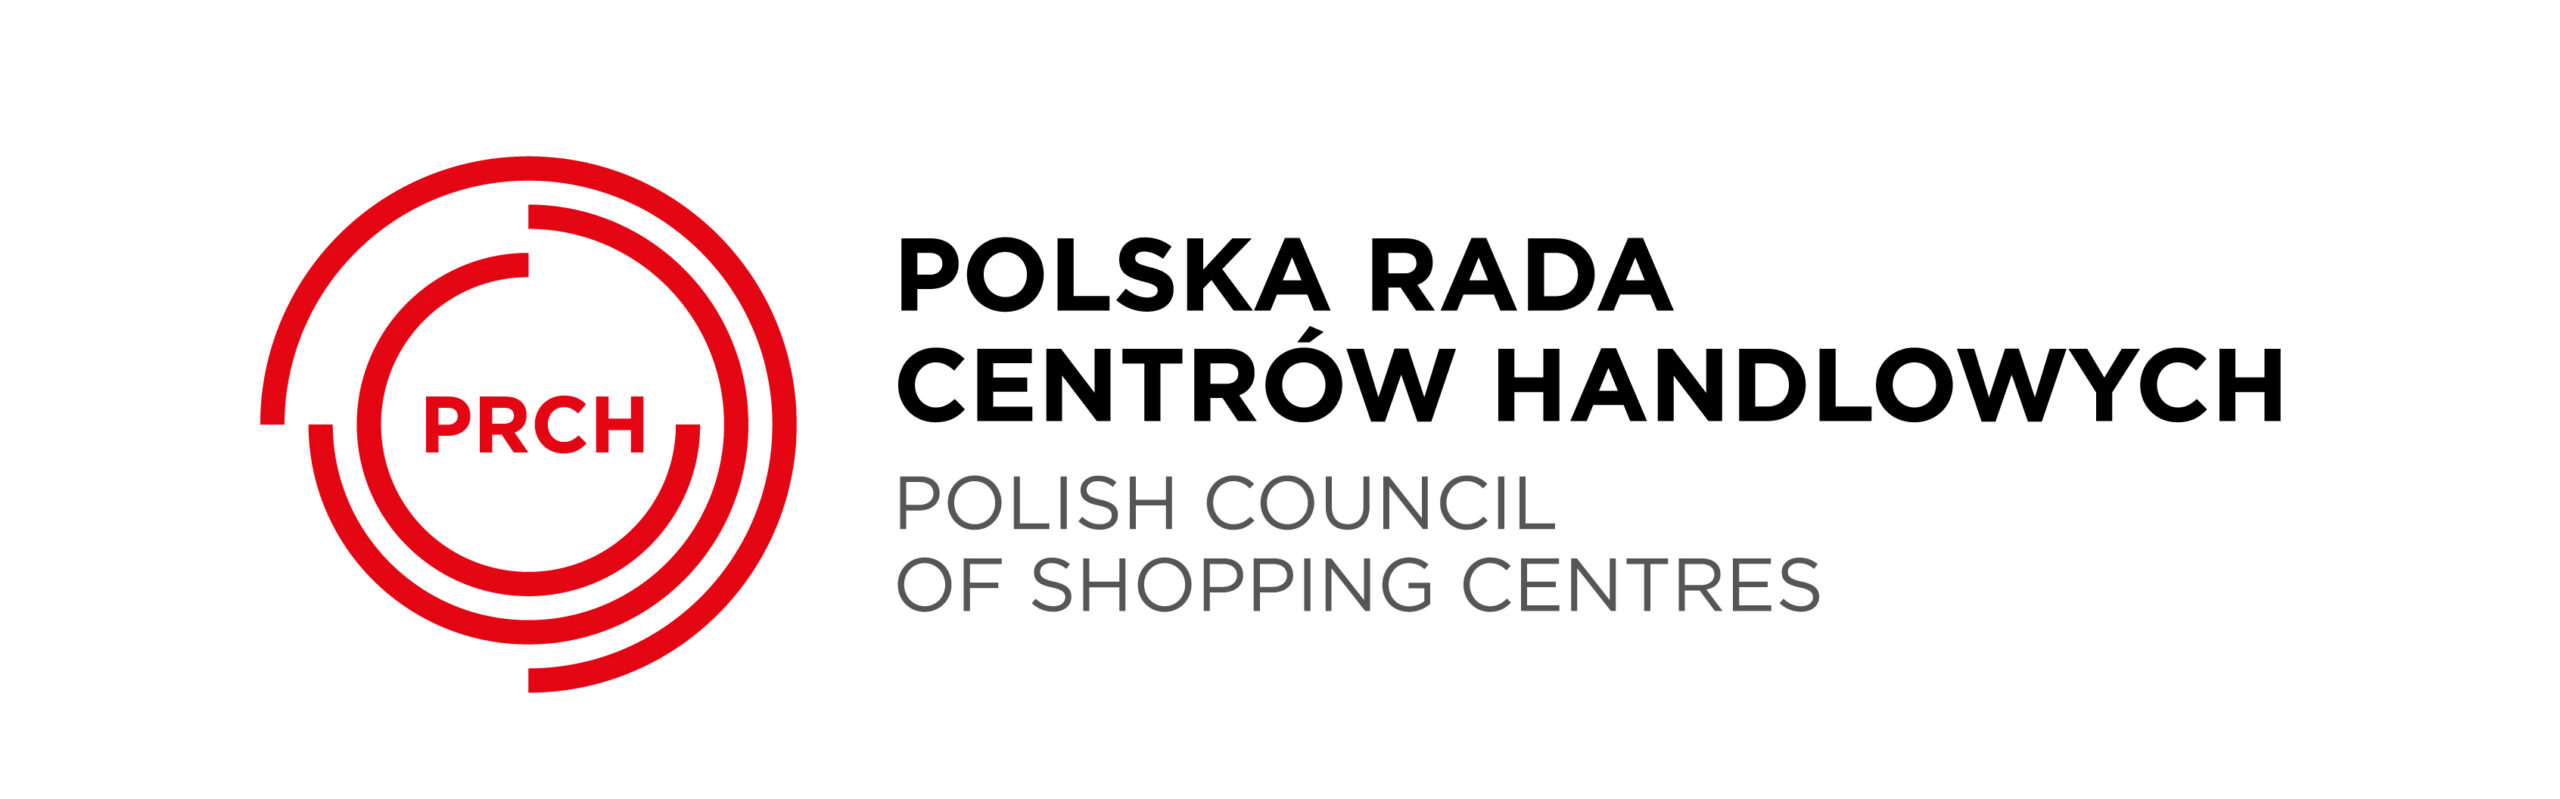 Polska Rada Centrów Handlowych